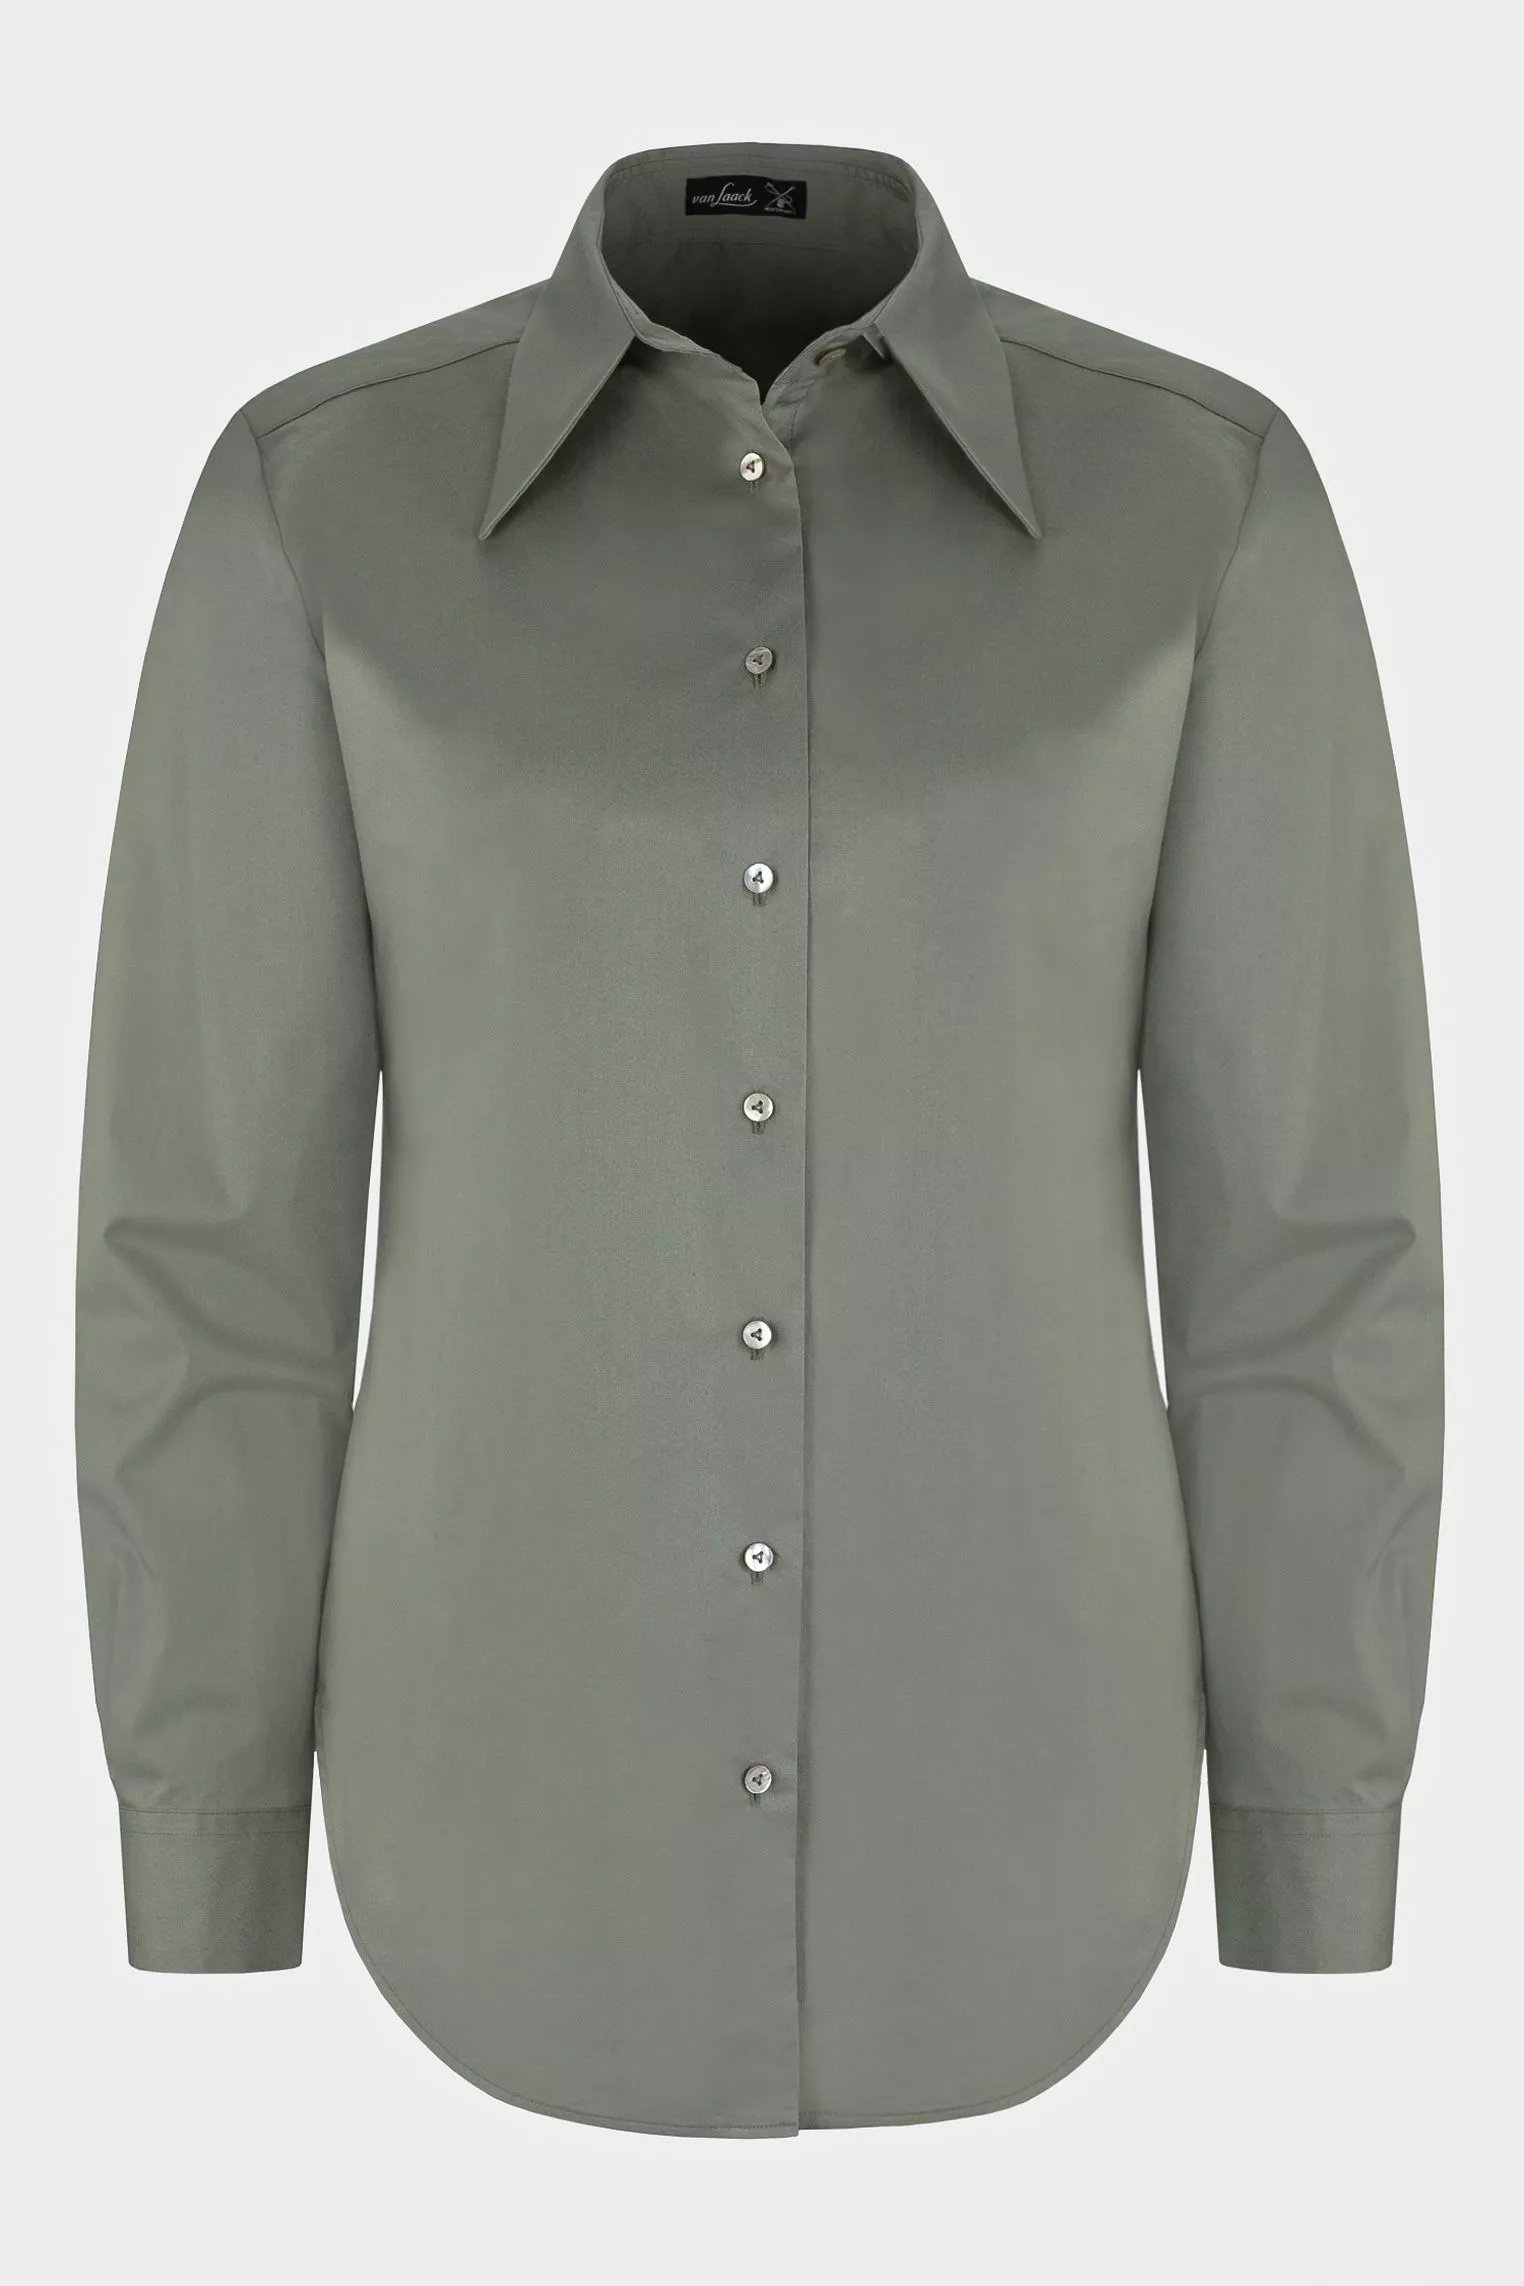 блузка M LUBI светло-зеленый M-LUBI_H00240_940 ,photo 1